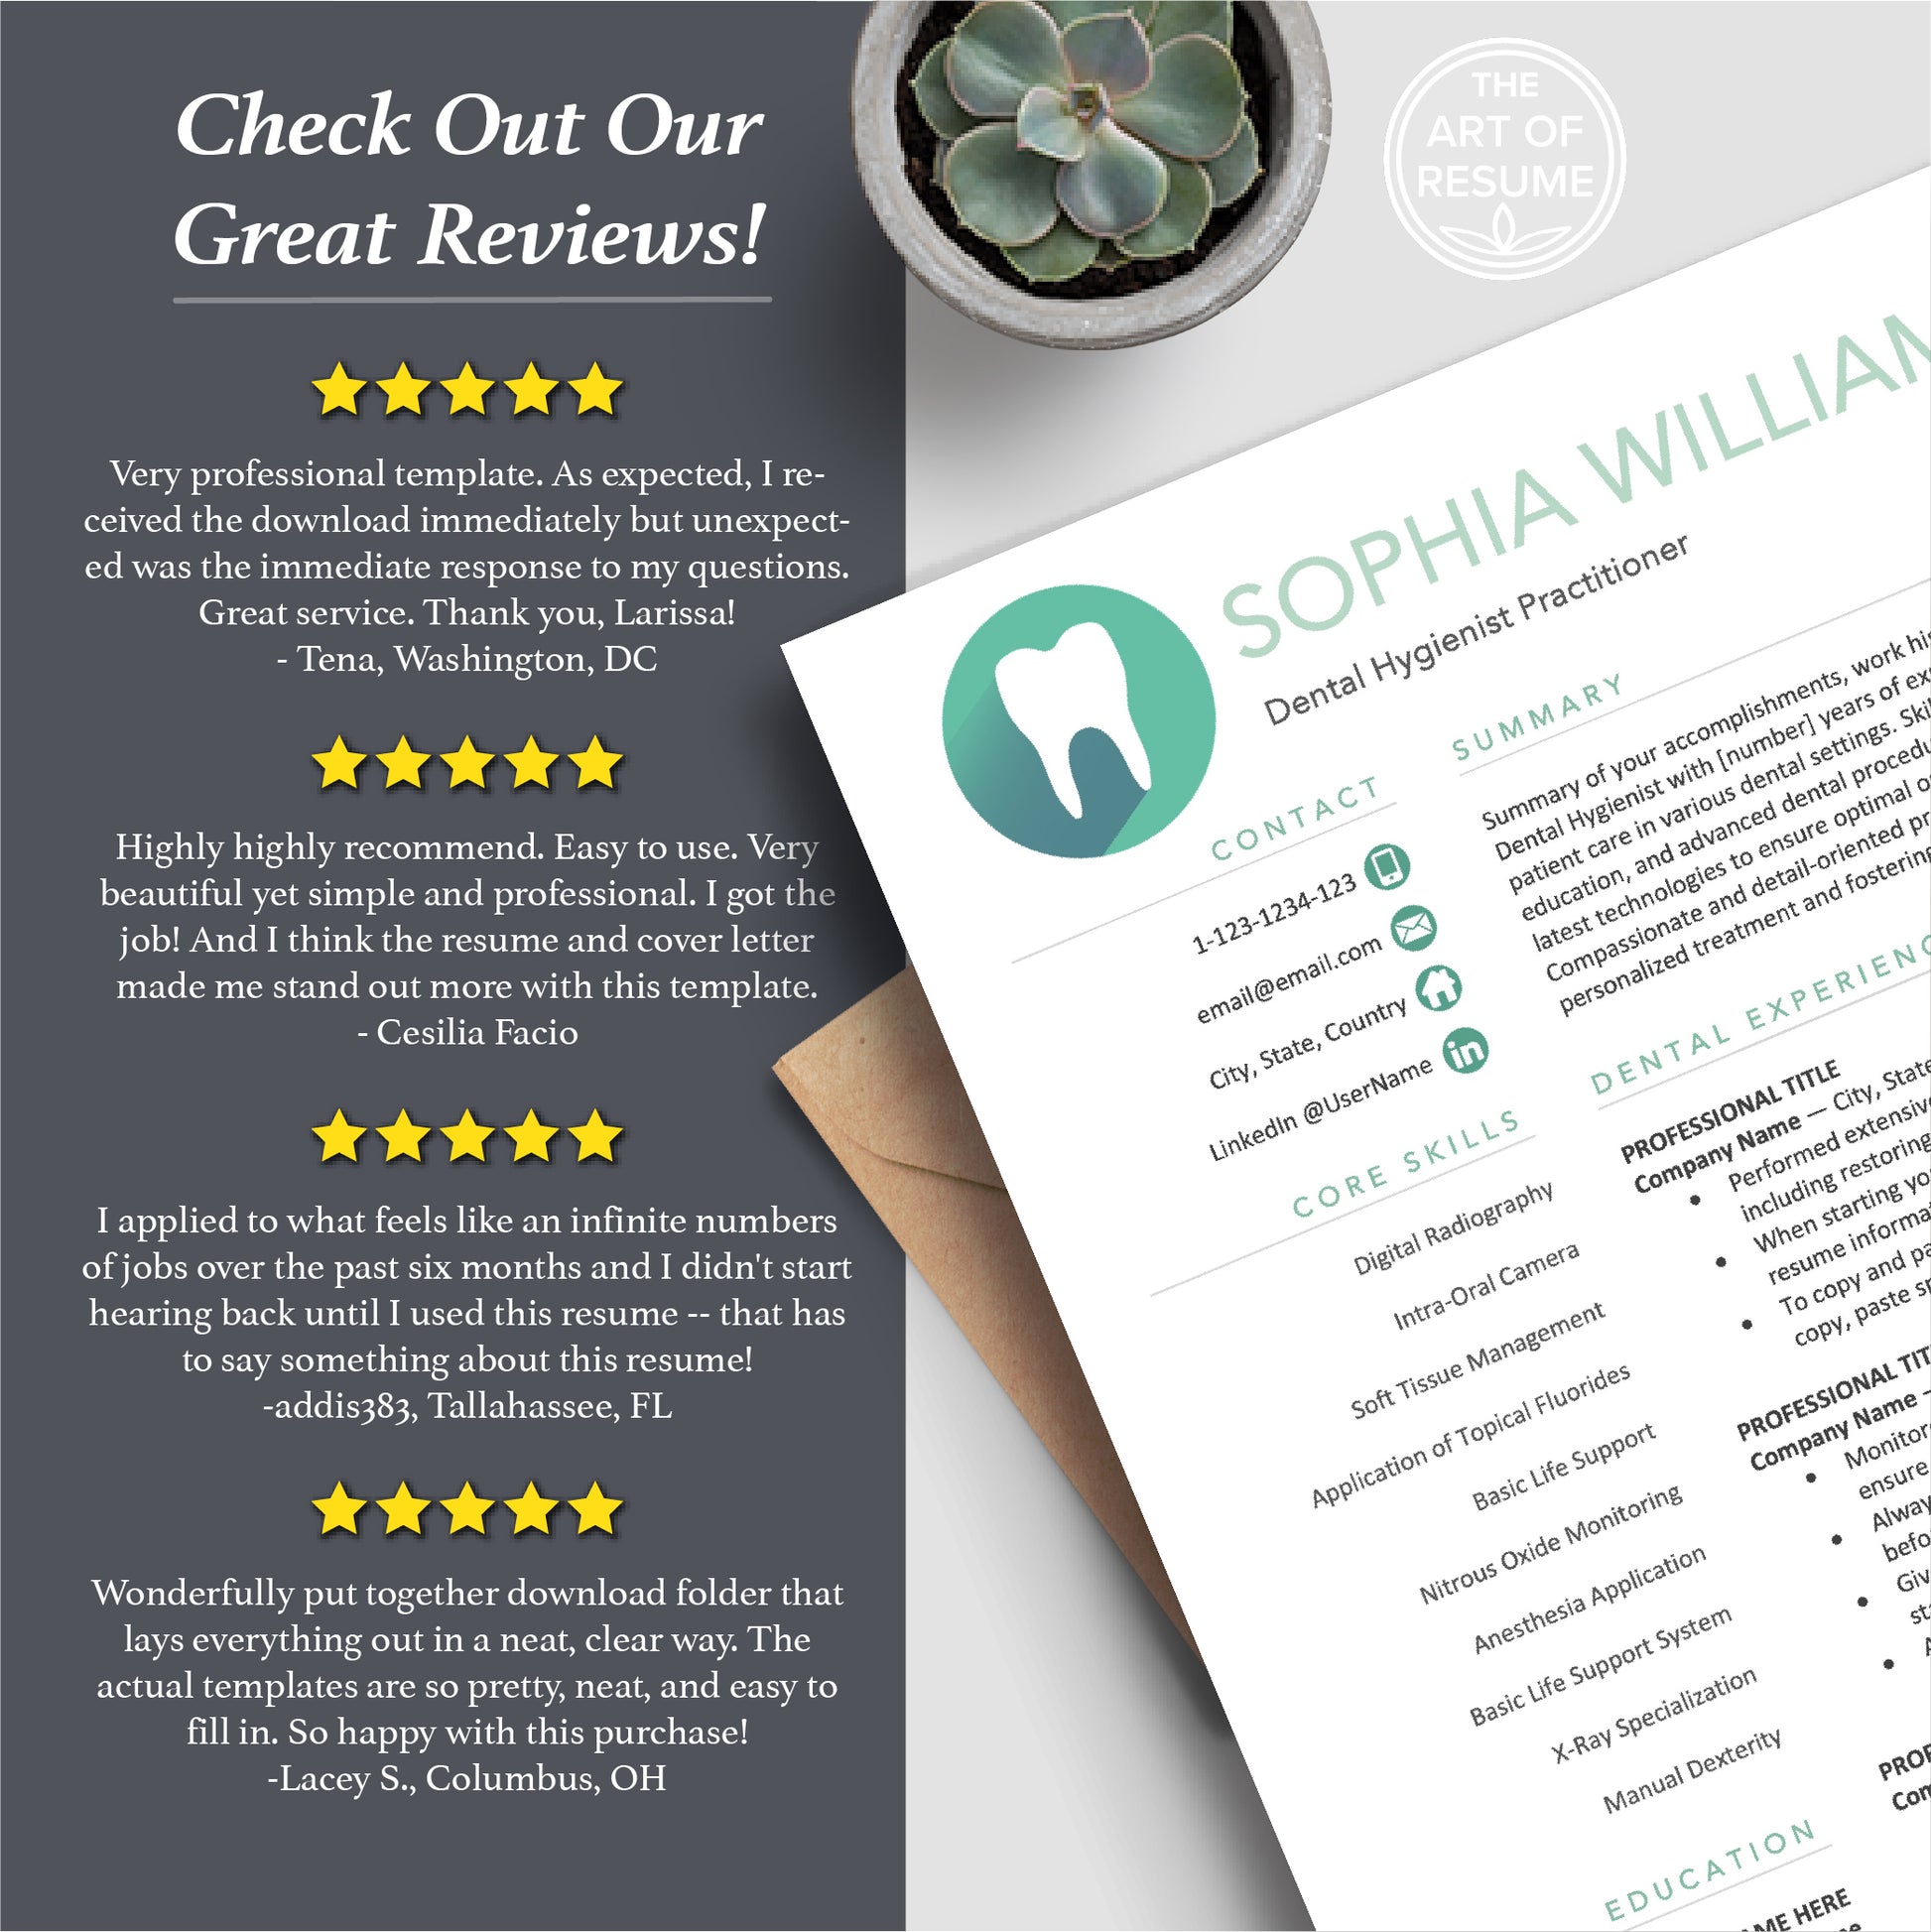 The Art of Resume | Dental Hygienist Dentist Resume CV Template Design Bundle Teal | 5 Star Resume Reviews Best Online